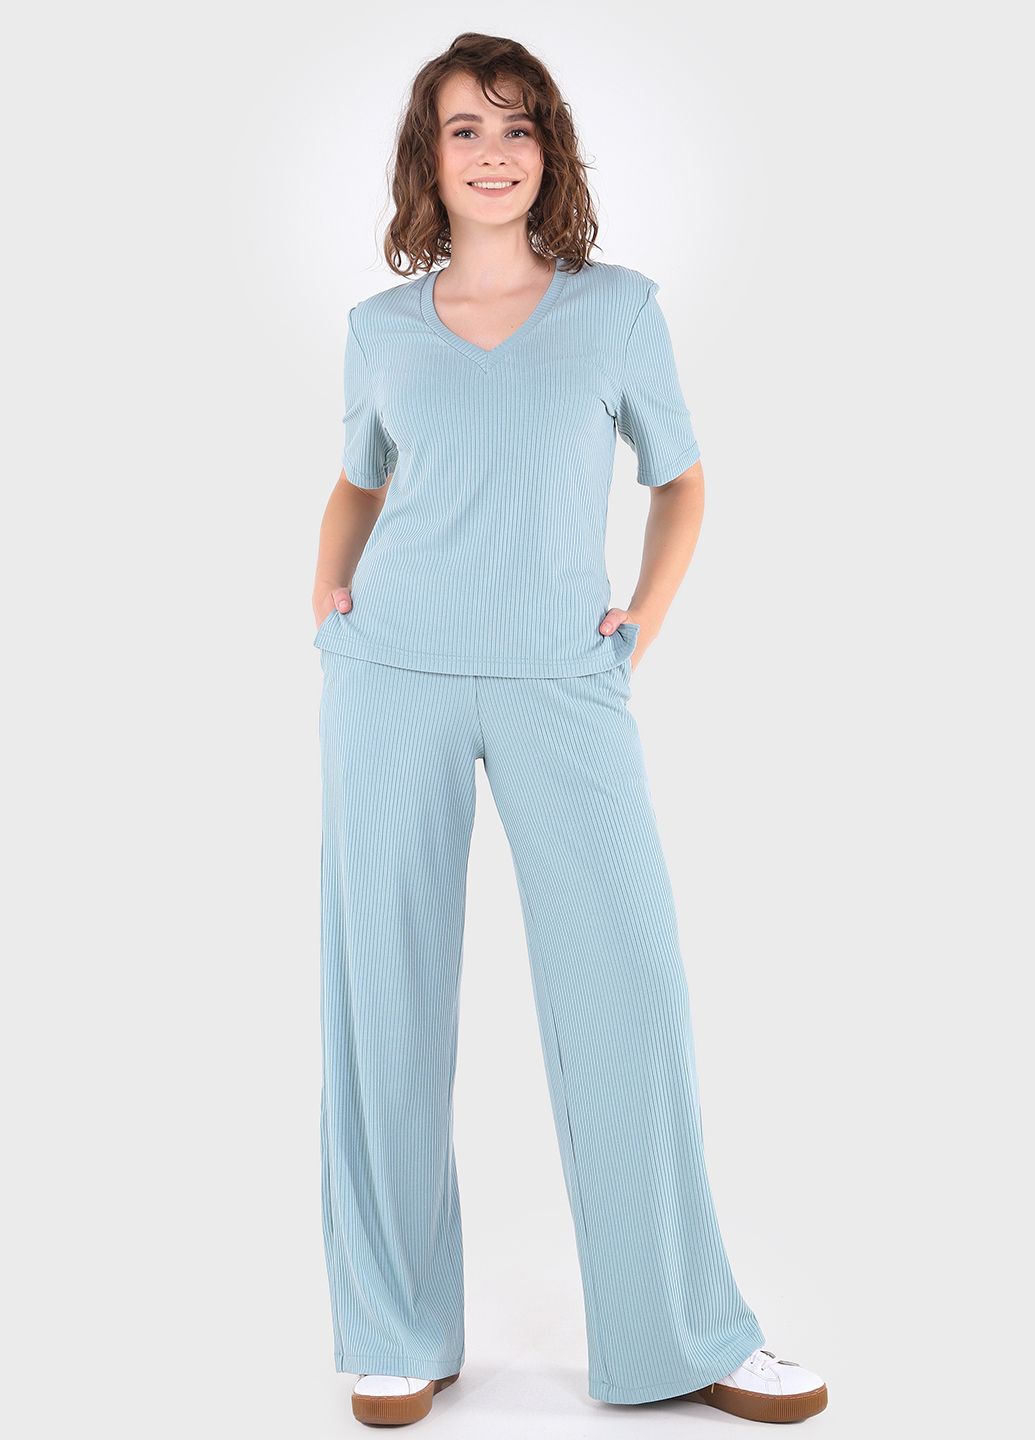 Купить Легкая футболка женская в рубчик Merlini Корунья 800000022 - Голубой, 42-44 в интернет-магазине